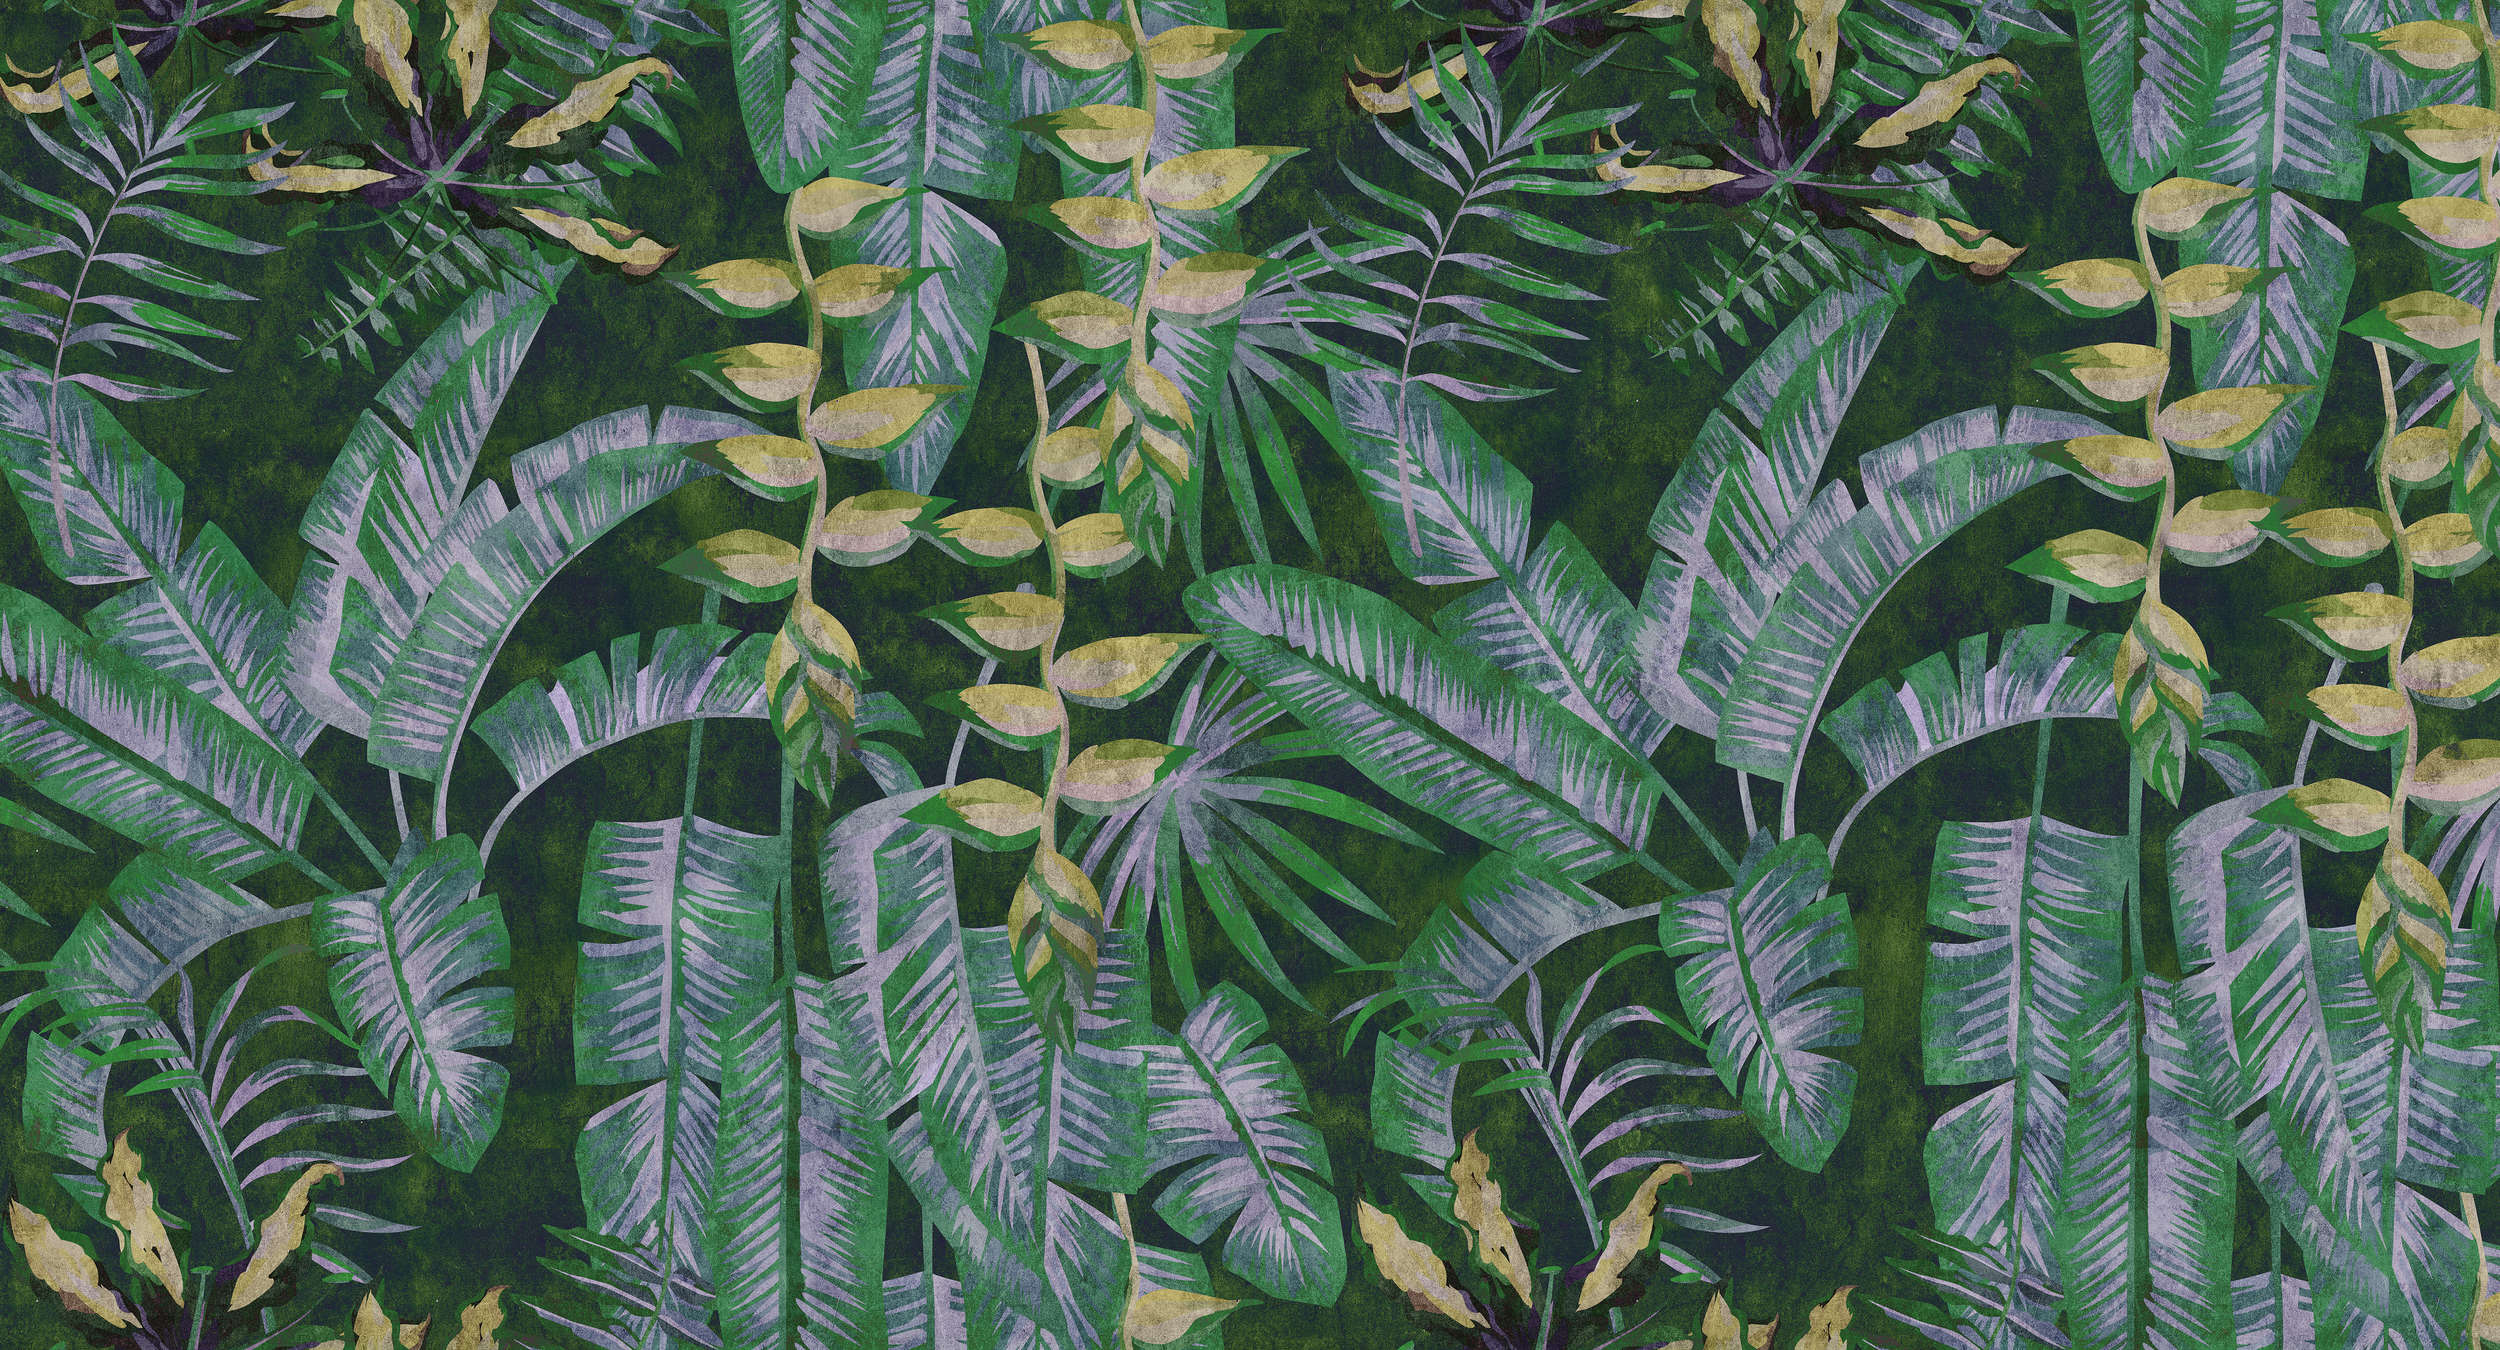             Tropicana 2 - Papier peint imprimé numériquement avec des plantes tropicales dans une structure de papier buvard - jaune, vert | structure intissé
        